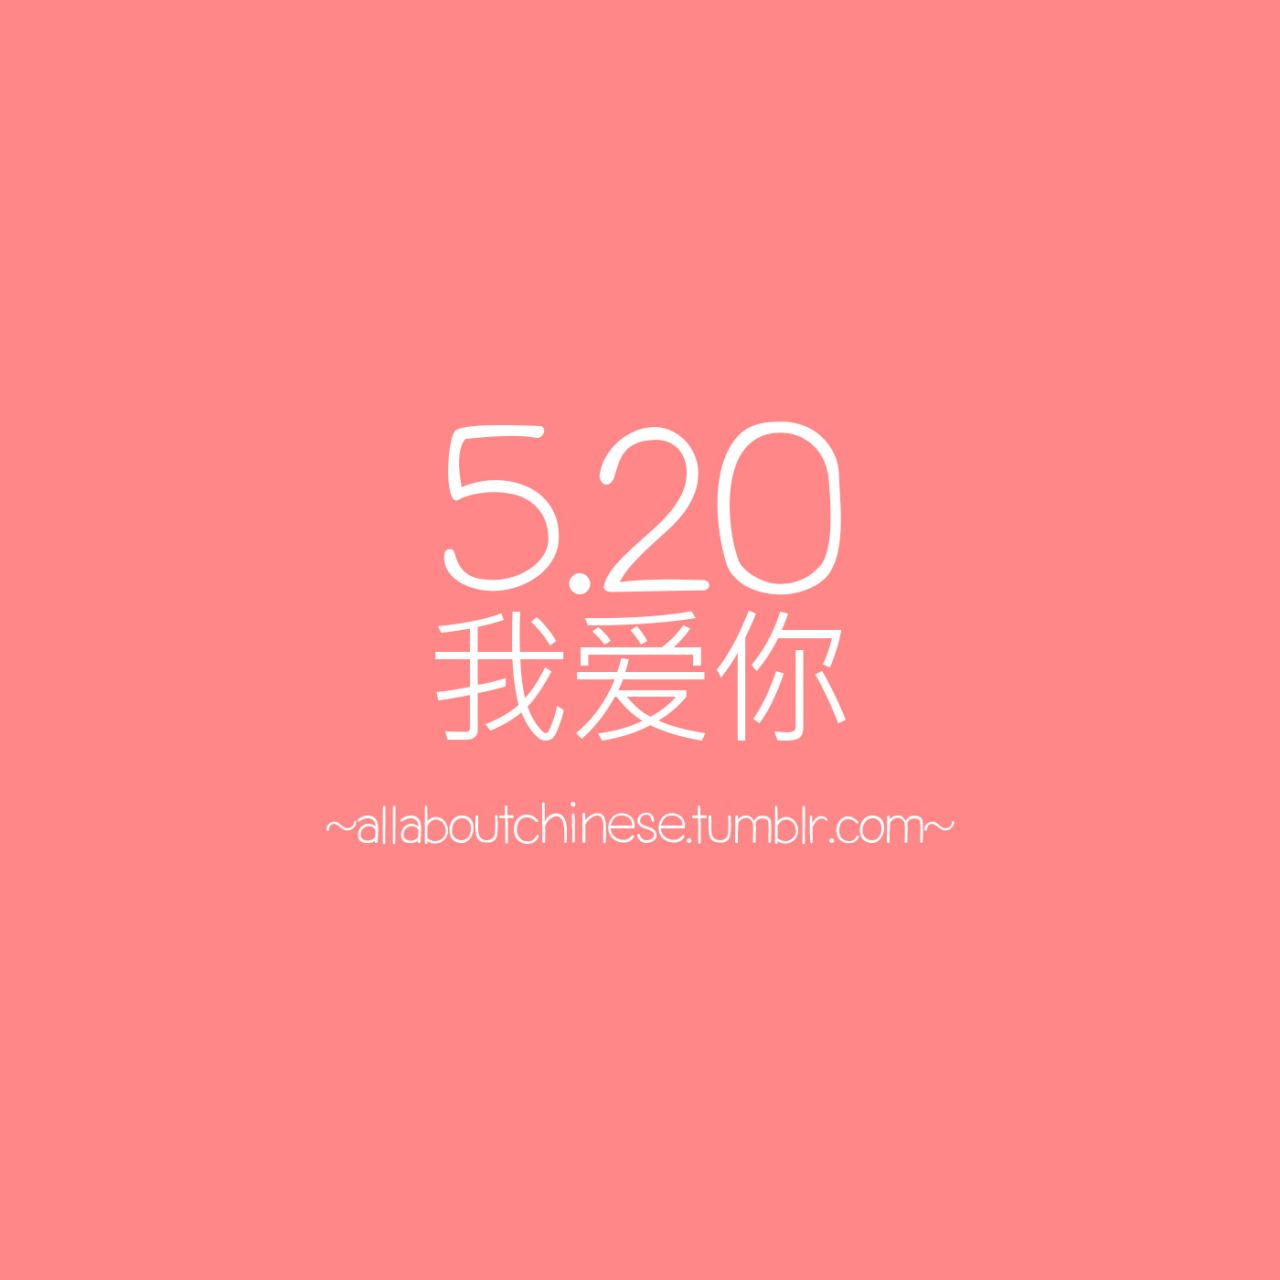 5.20 我爱你 我爱你。取其谐音。520这3个字母，在中文中的发音，与'我爱你'非常相似。. Urban style outfits, Movie posters, Quotes